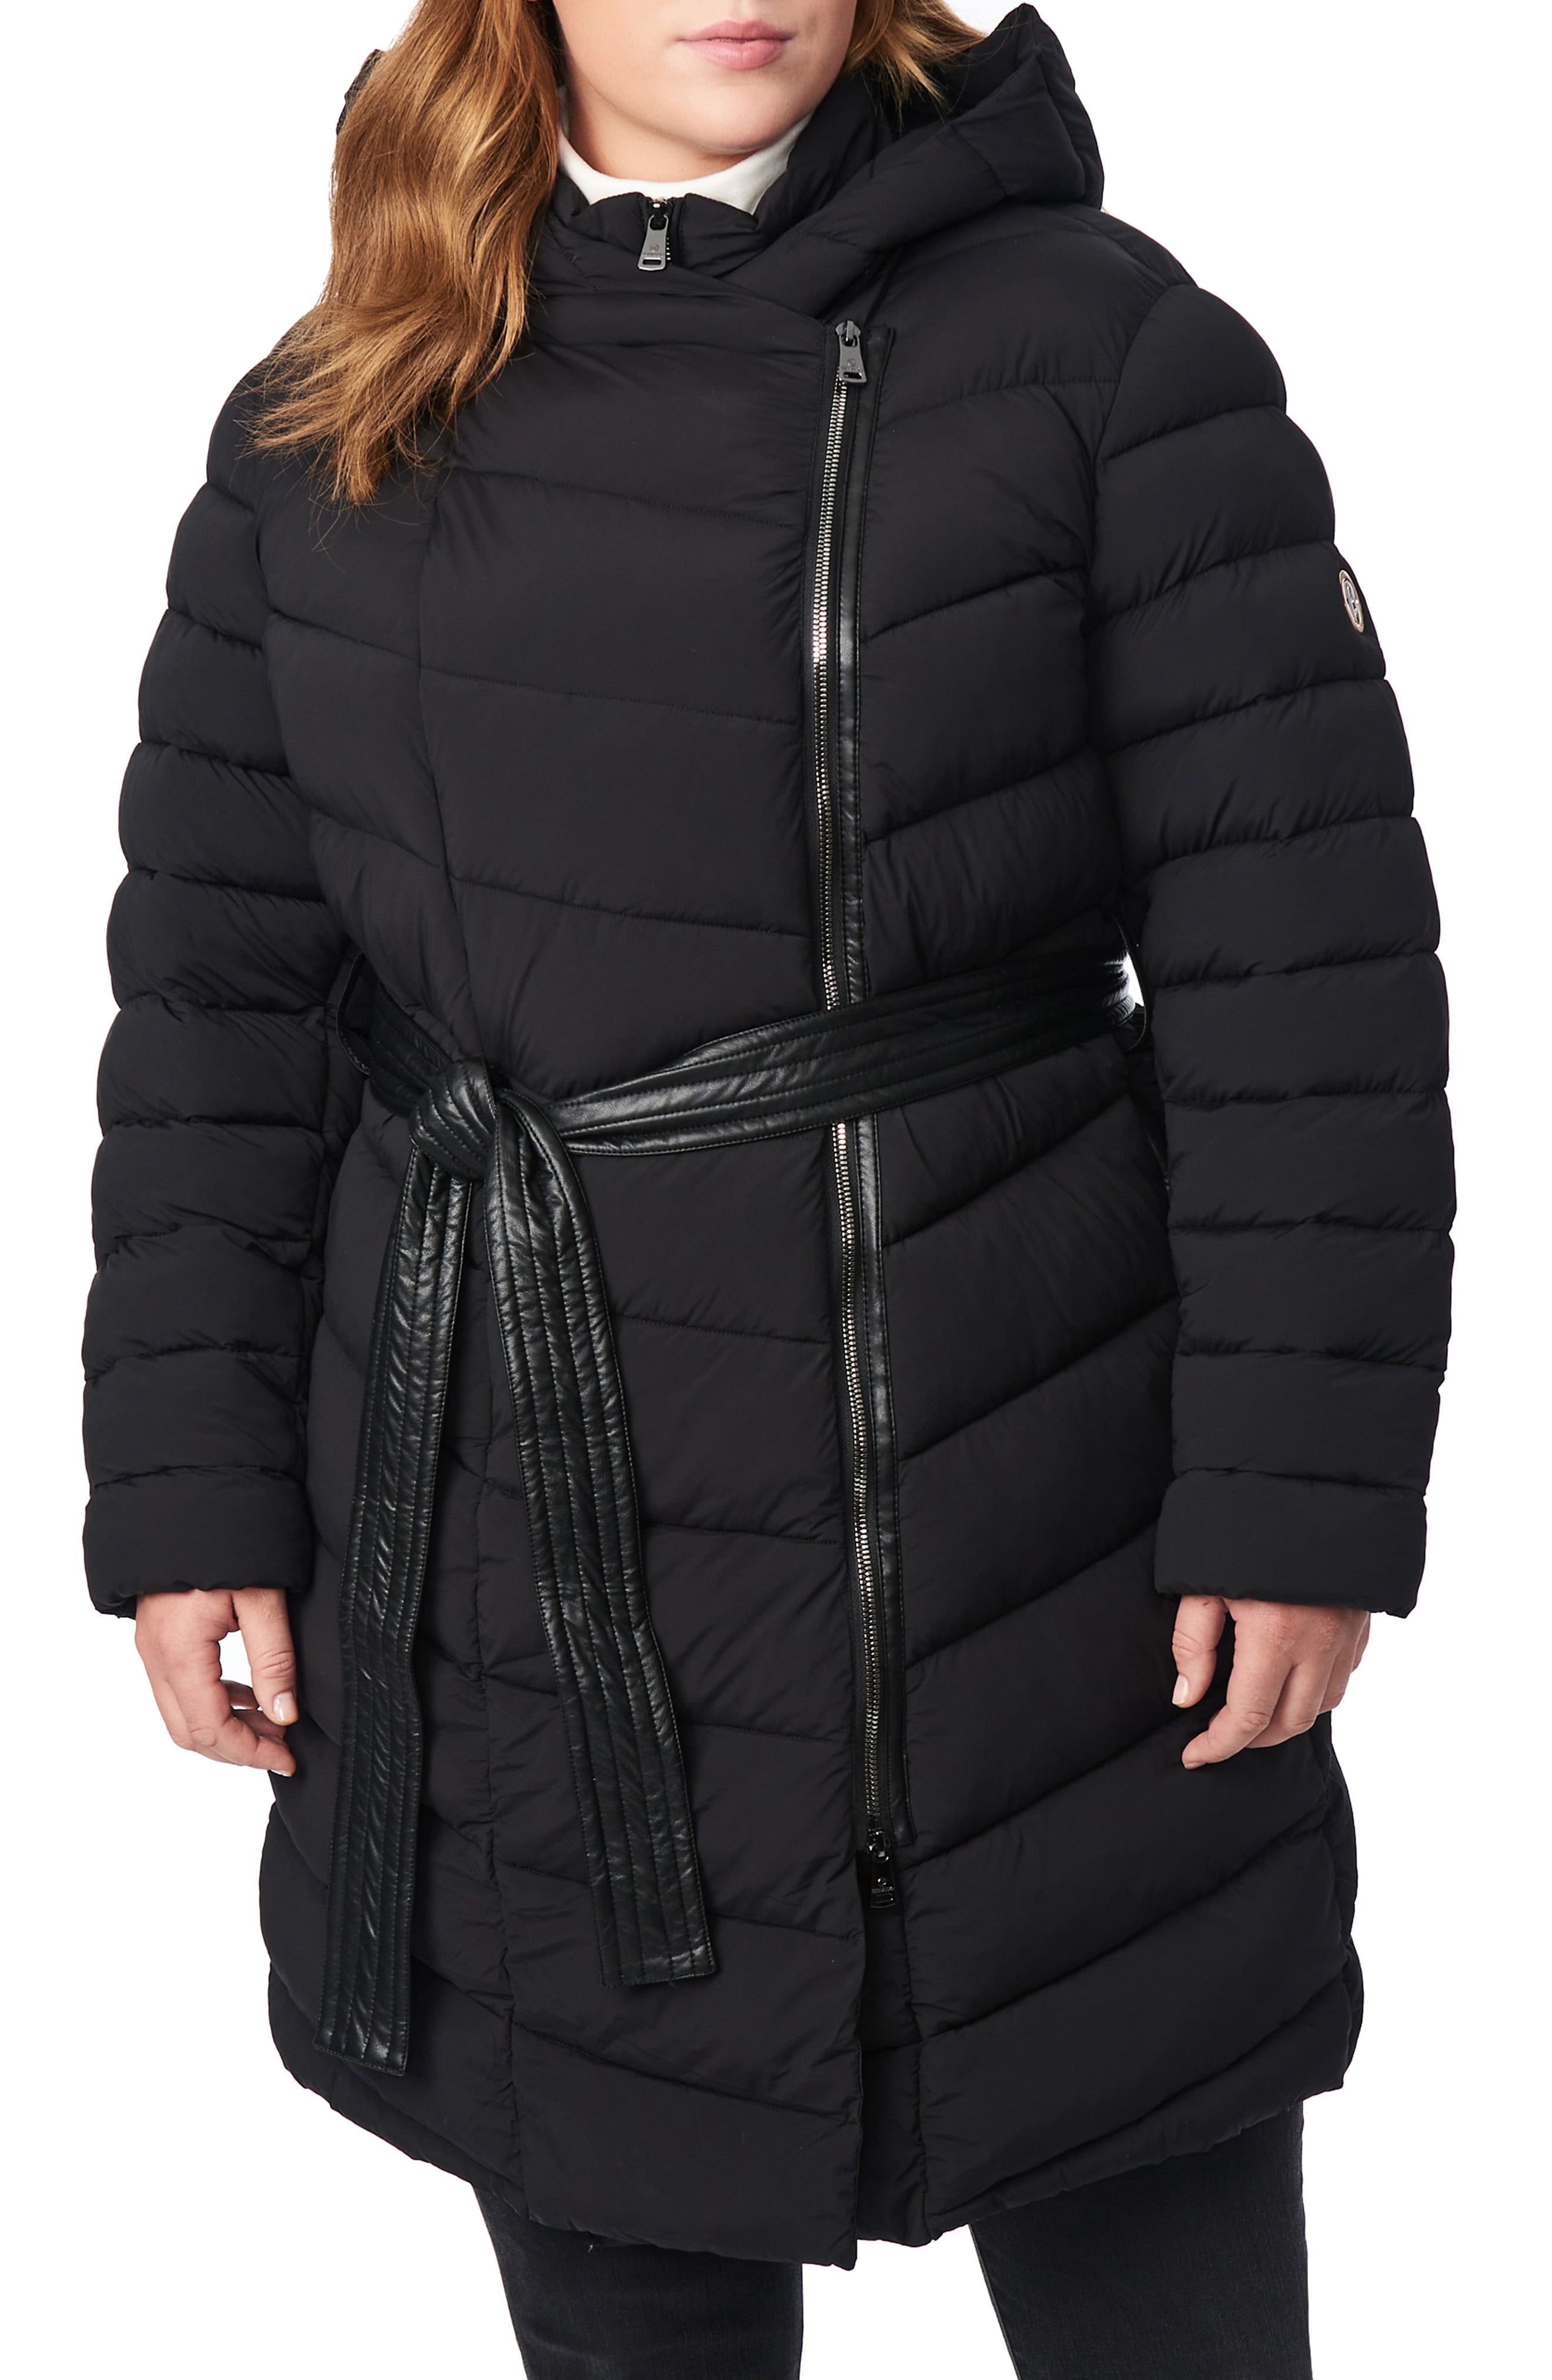 ladies winter coats size 20